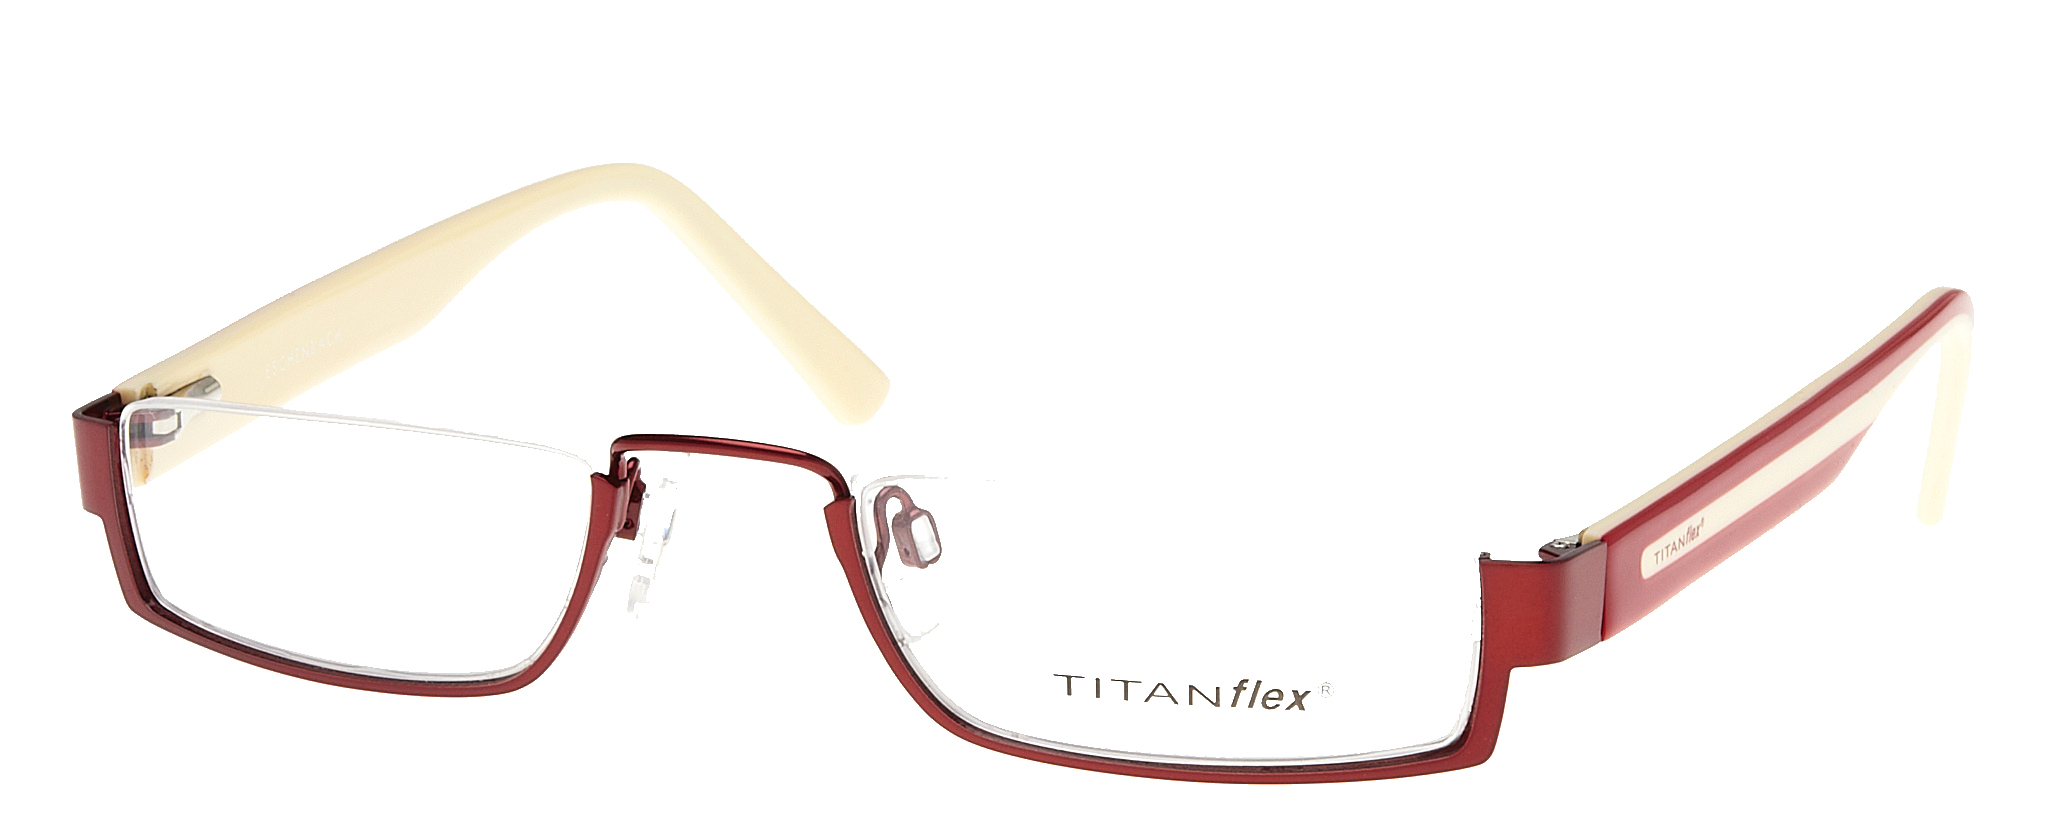 Titanflex lookover 820600 